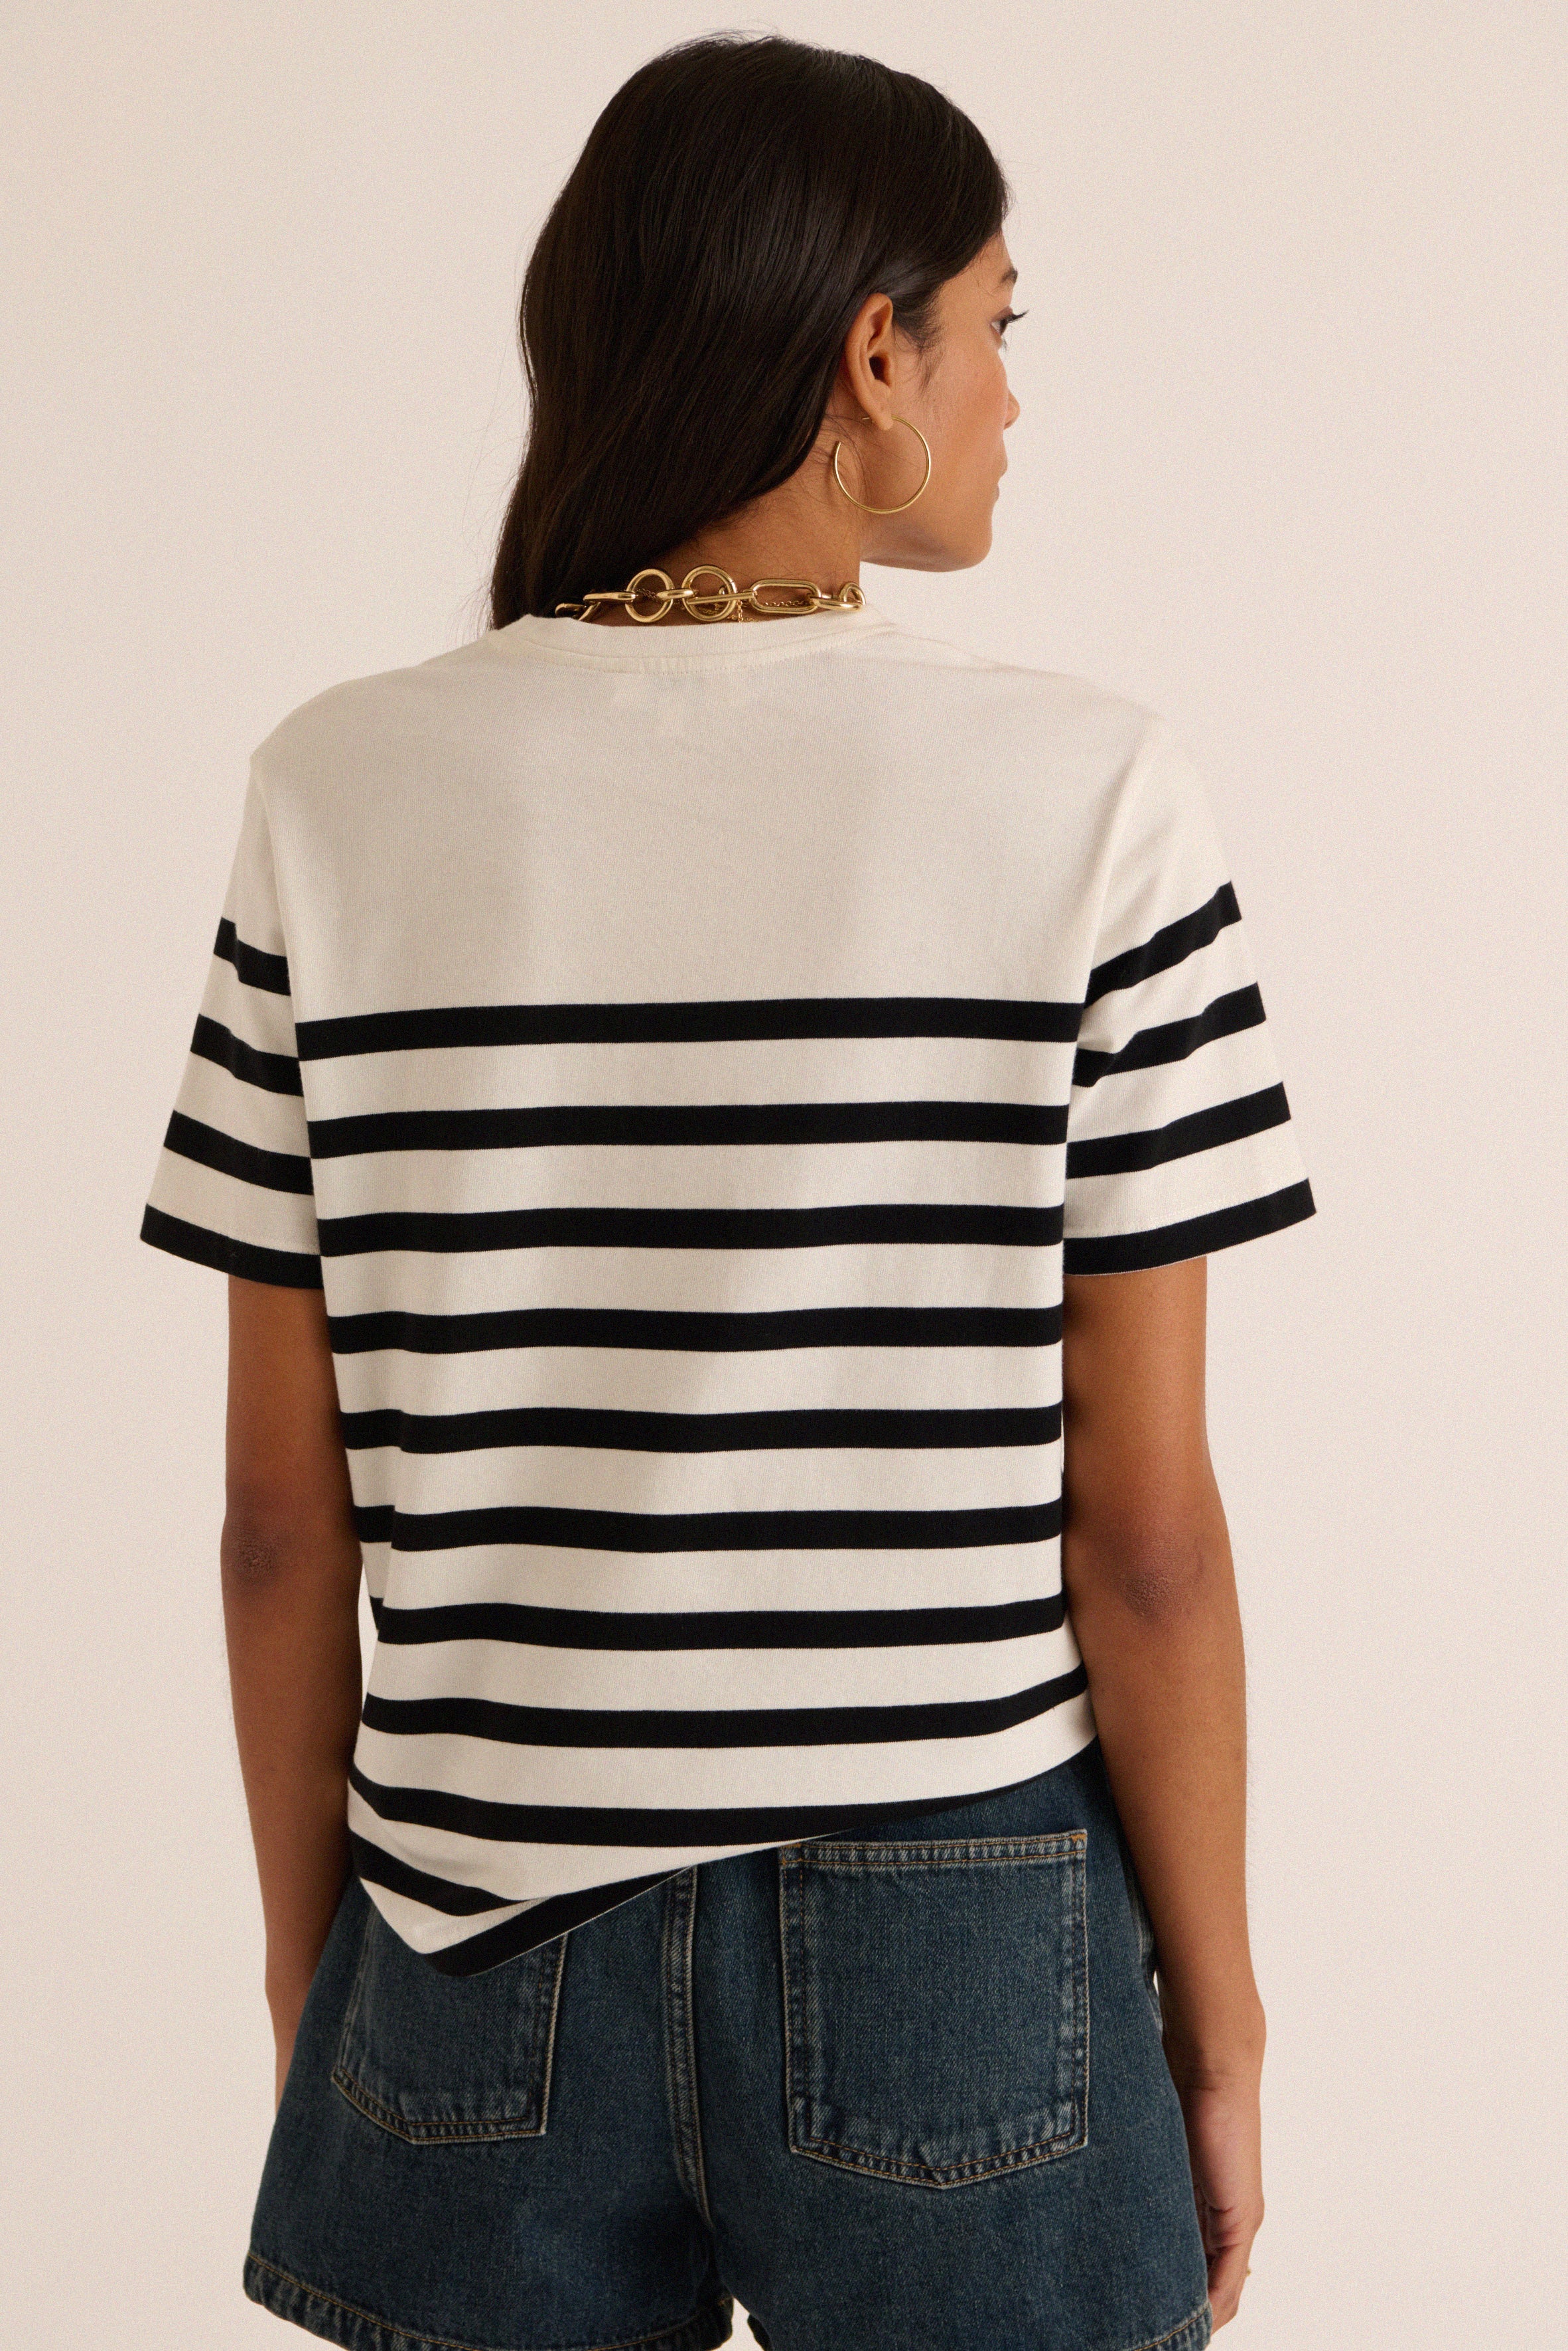 Bree striped t-shirt